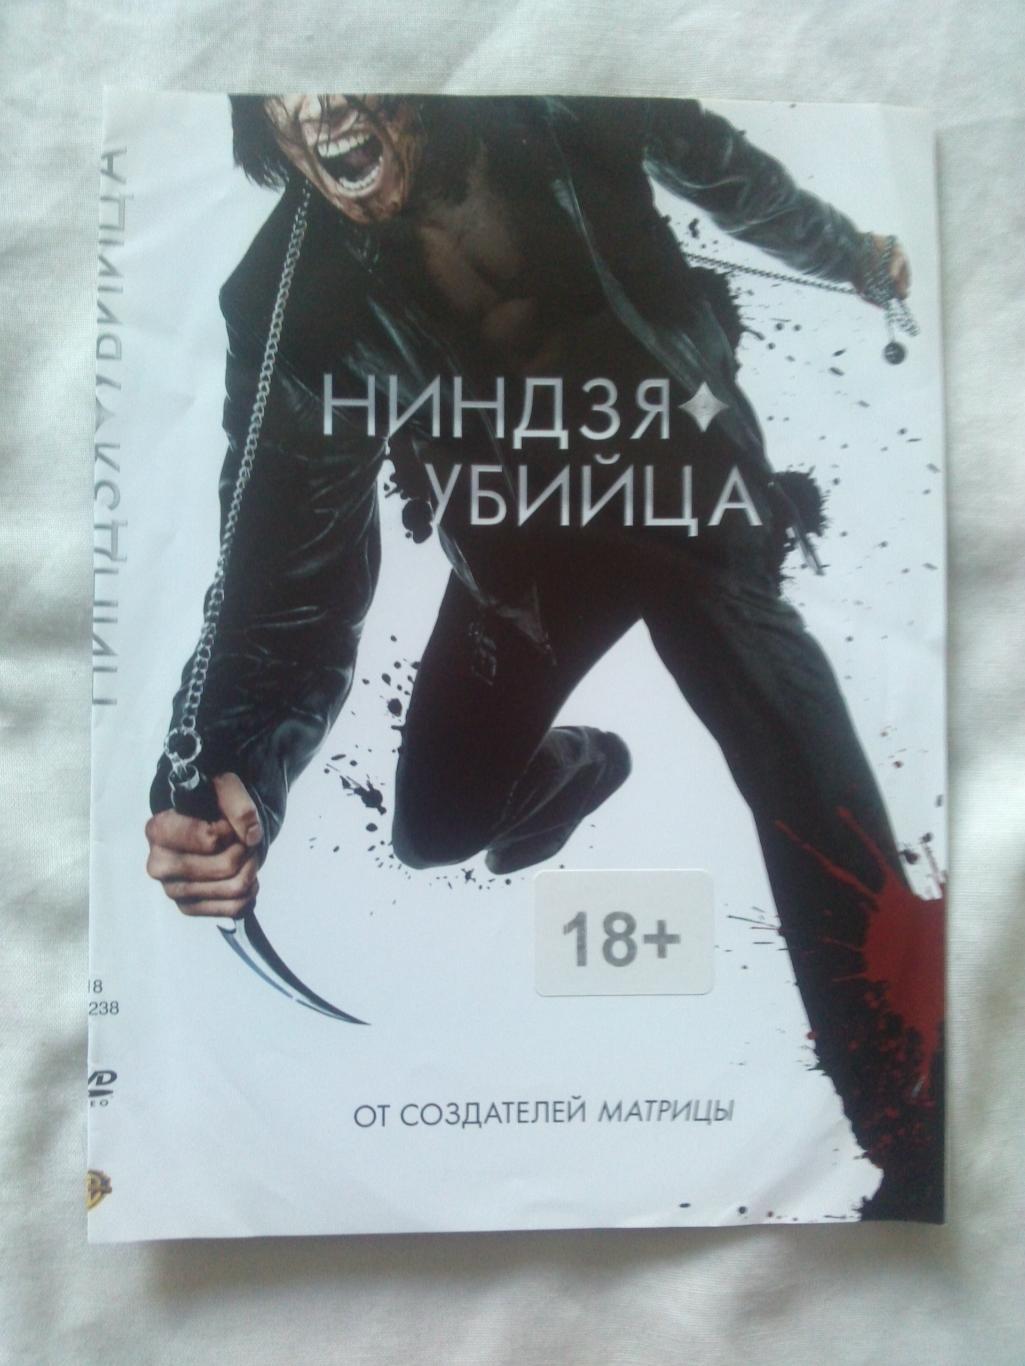 DVD Ниндзя - убийца (от создателей Матрицы) лицензия (боевик , единоборства)